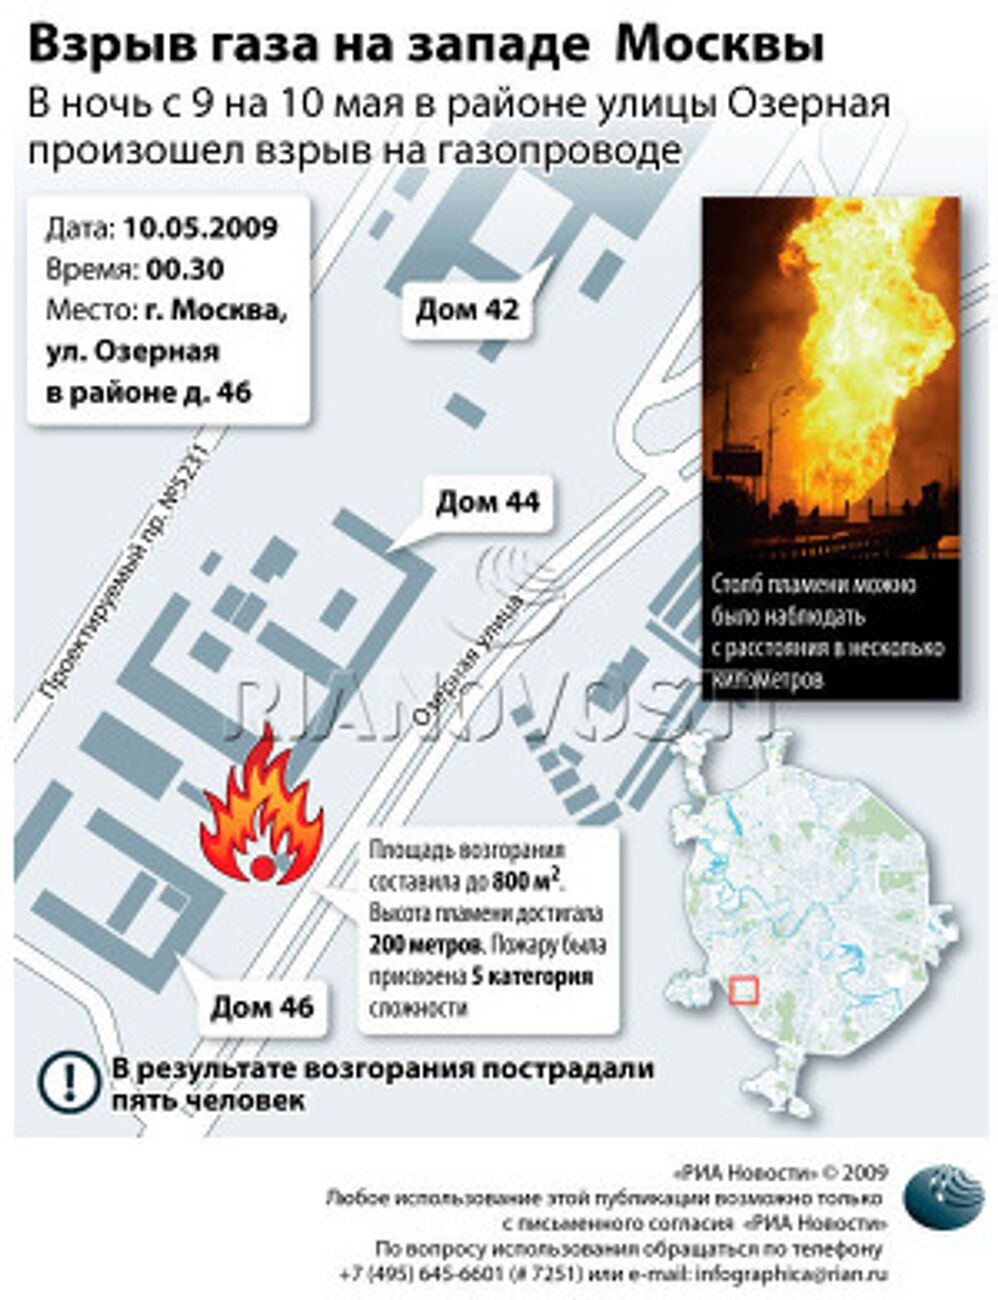 Взрыв газа на западе Москвы